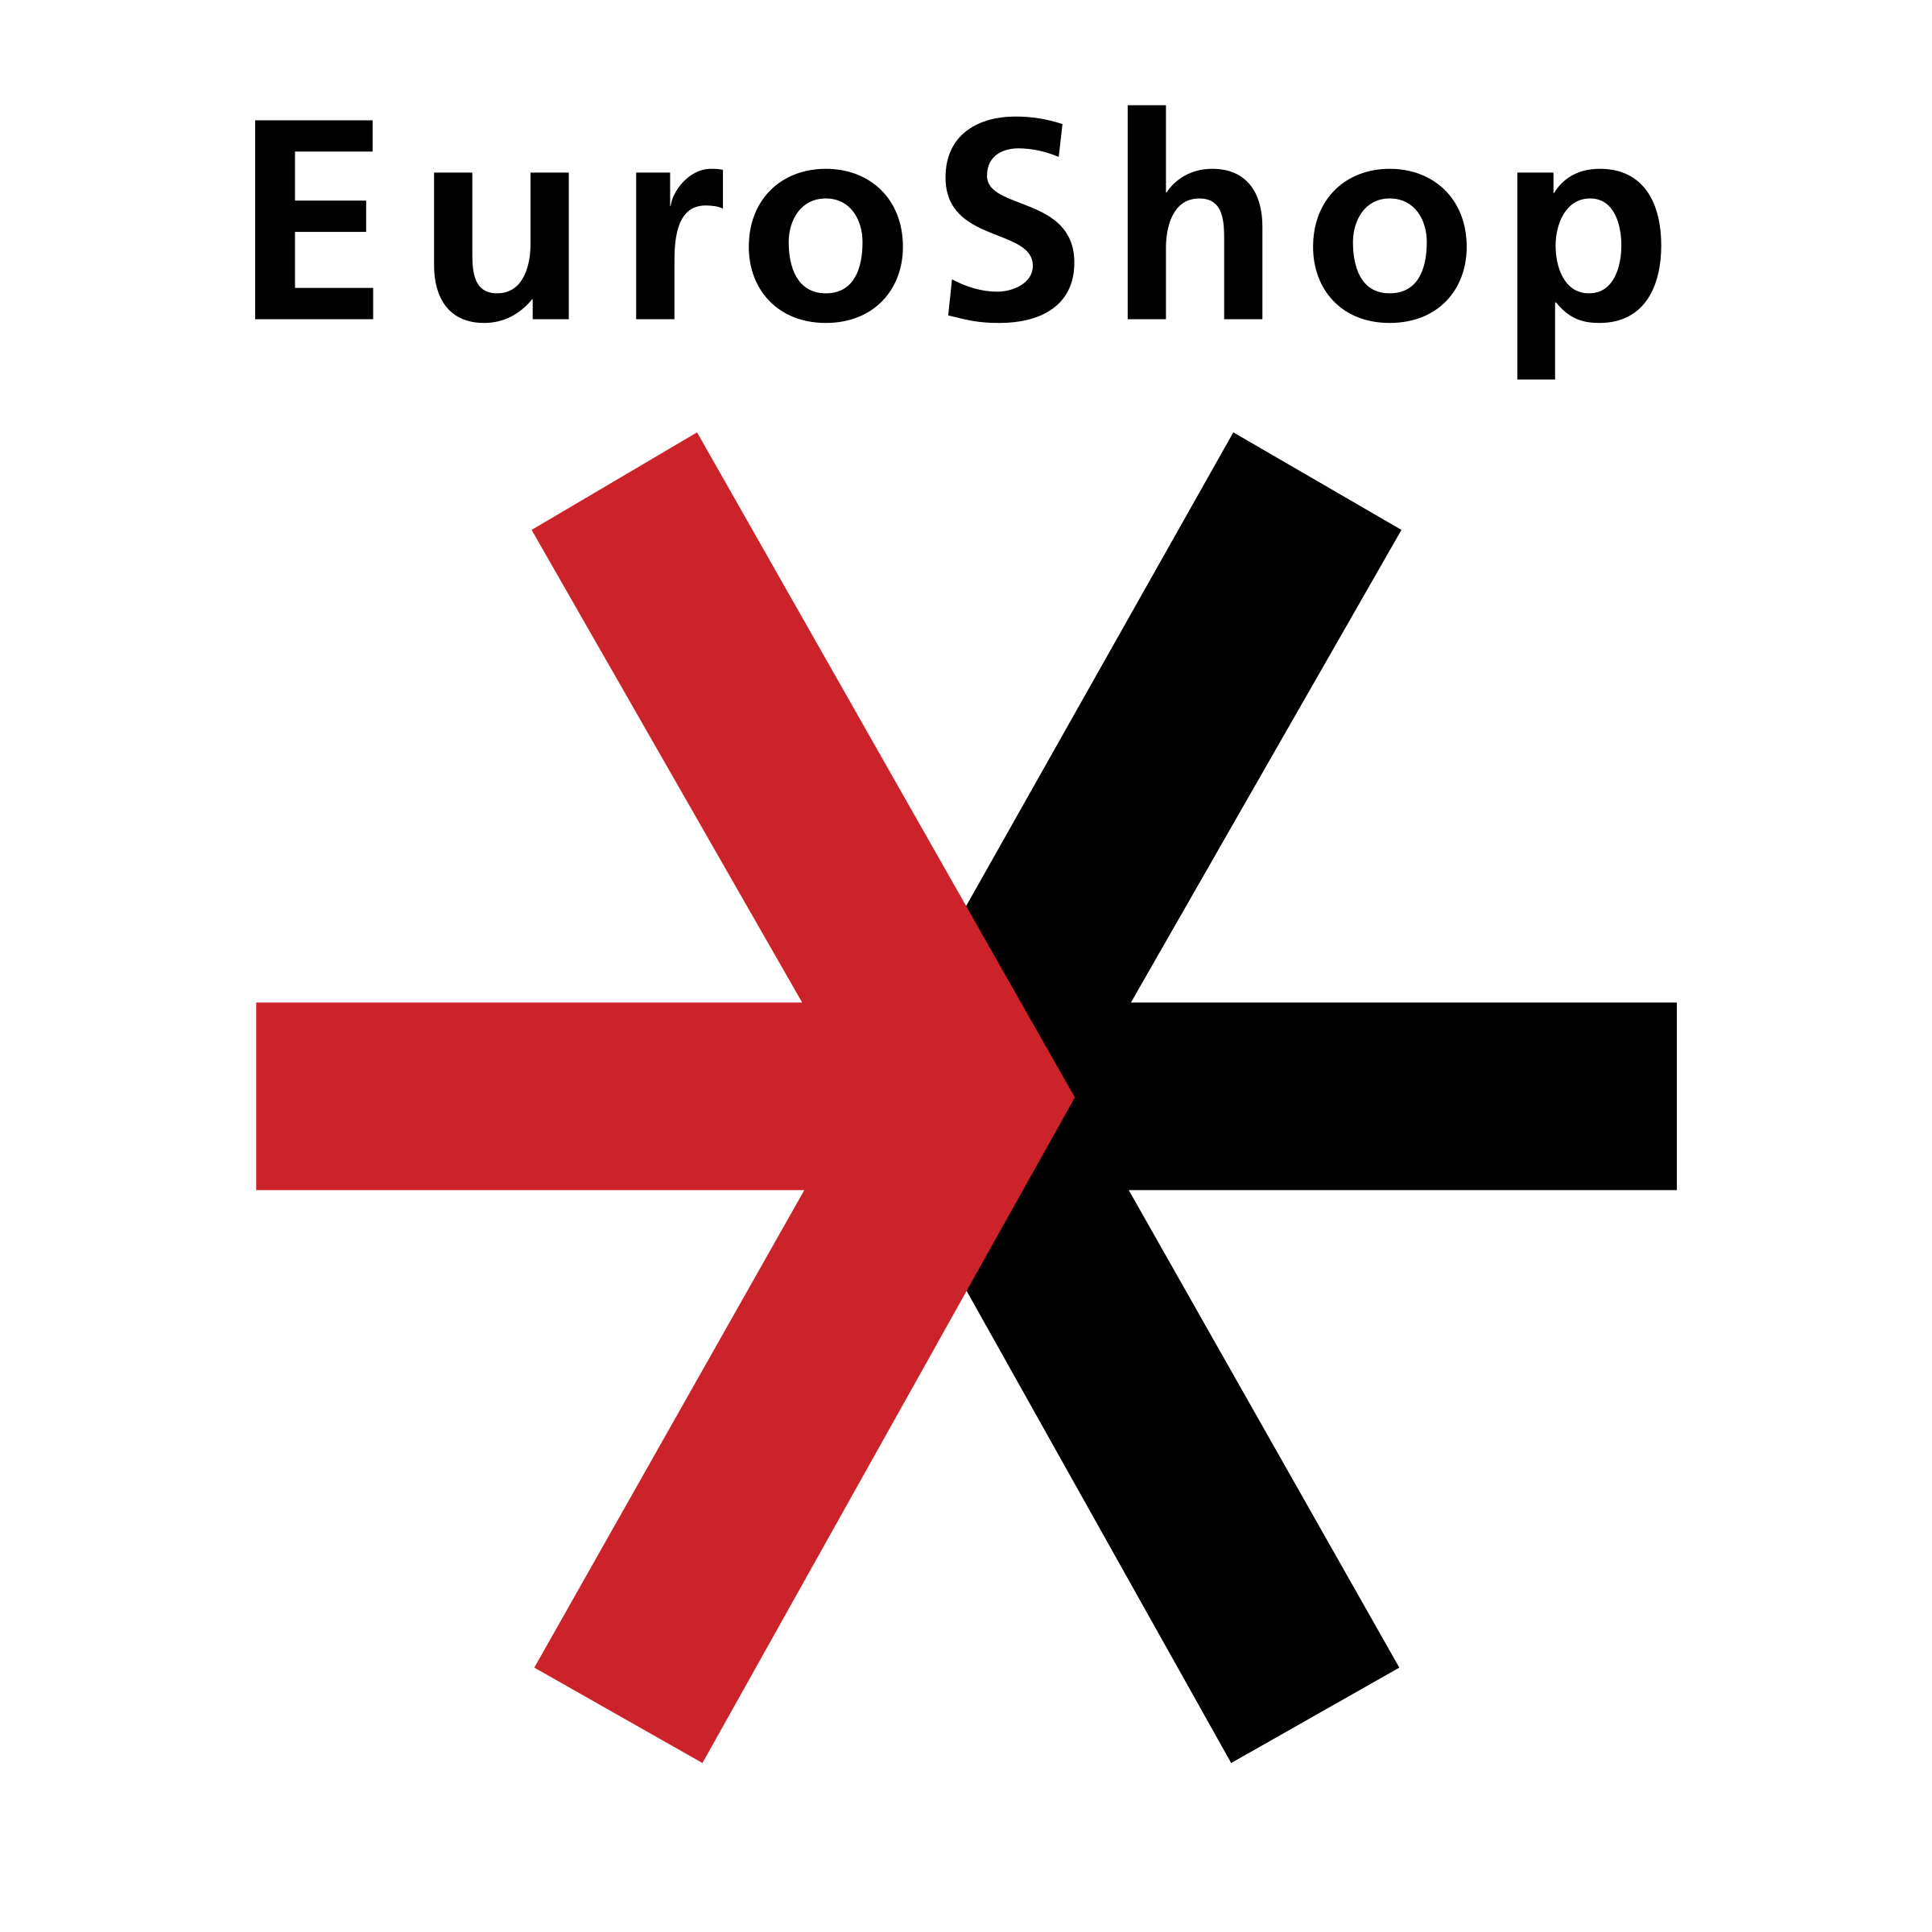 euroshop-logo-png-transparent